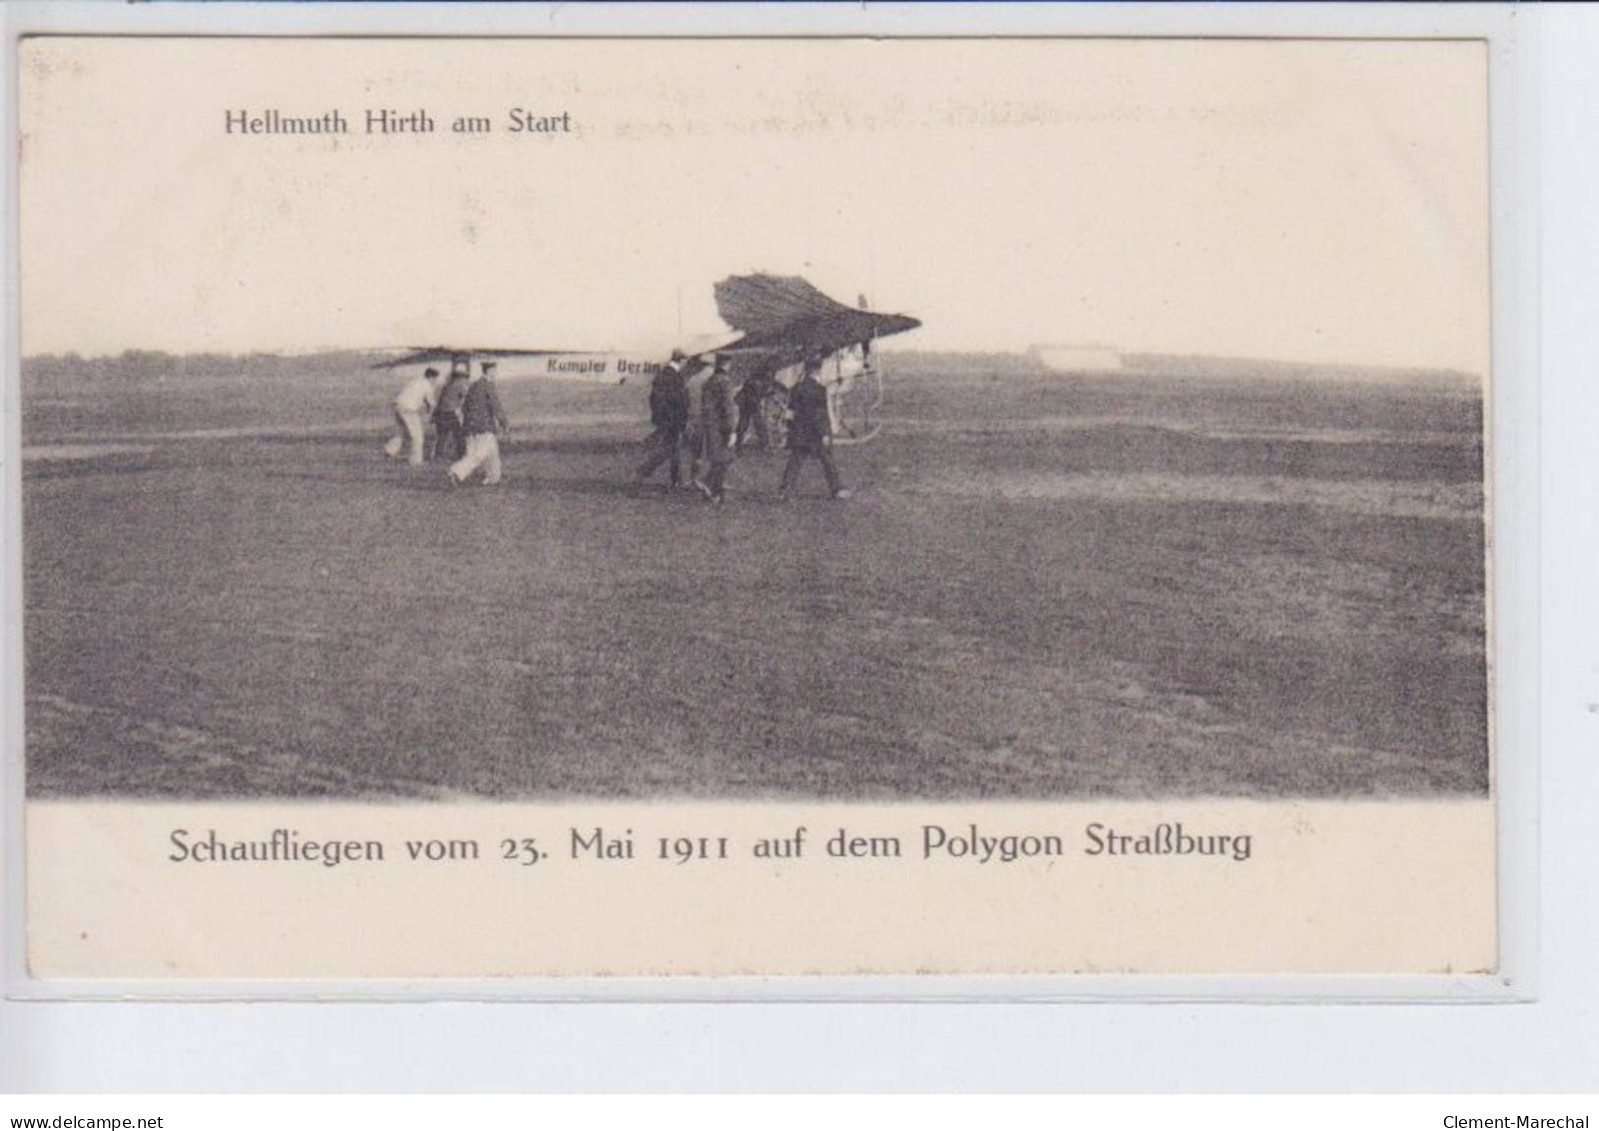 STARSBOURG: Brunhuber Im Fluge, Schaufliegen Vom 23 Mai 1911, Laemmlin Vor Dem Abfurz (Aviation) - Très Bon état - Strasbourg